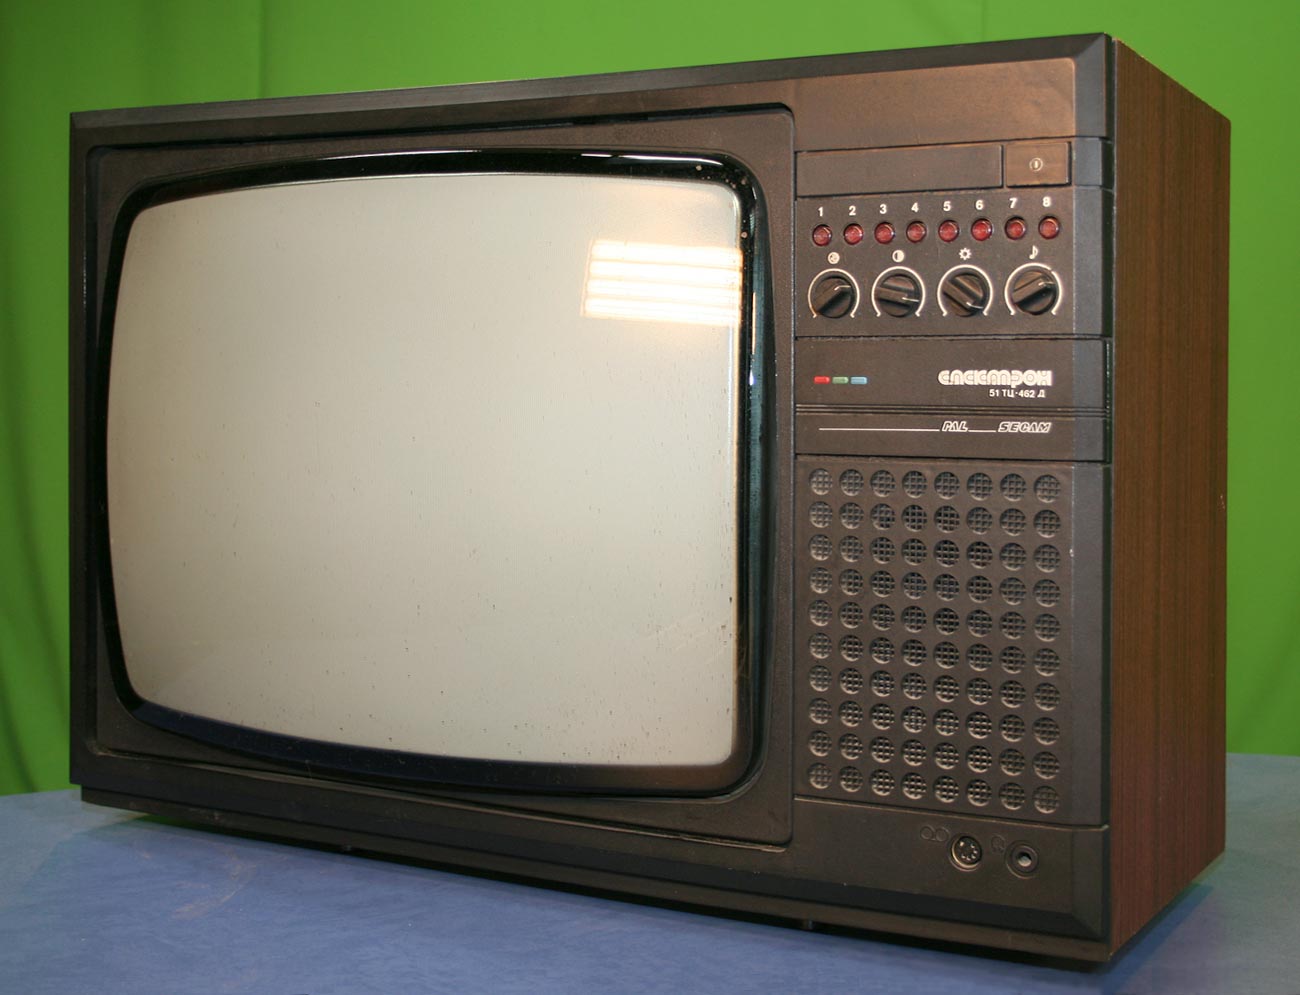 Куплю советский телевизор. Цветной телевизор электрон ц275д. Советский телевизор Горизонт ц275. Телевизор электрон 275 д. Телевизор электрон 714д.